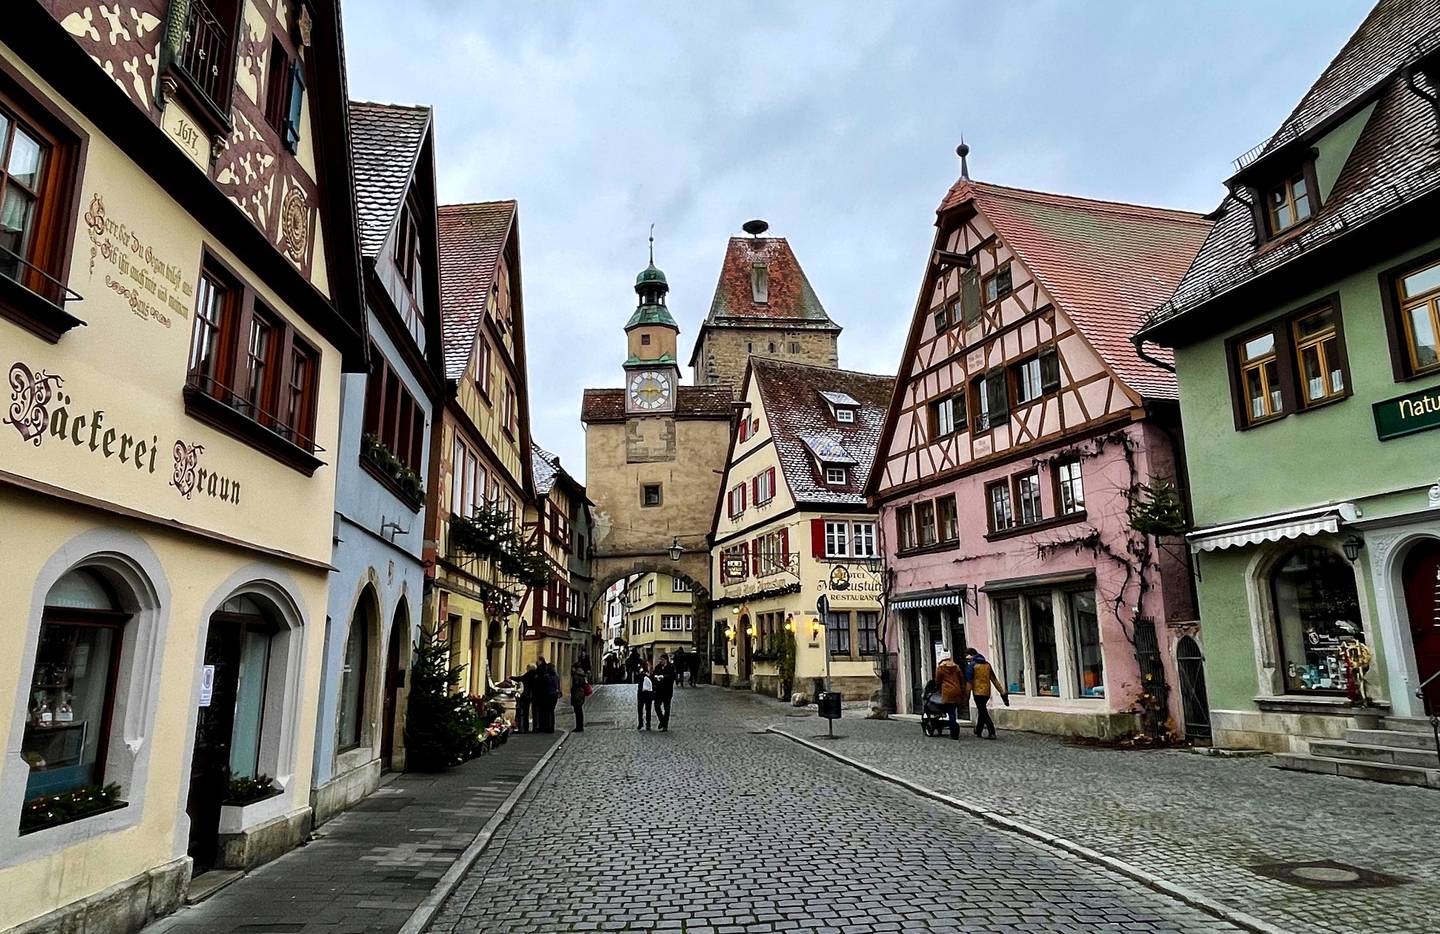 Du kan bruke flere dager på å utforske og oppdage sidegater og smug i vakre Rothenburg. Hvert gatehjørne er en ny mulighet.